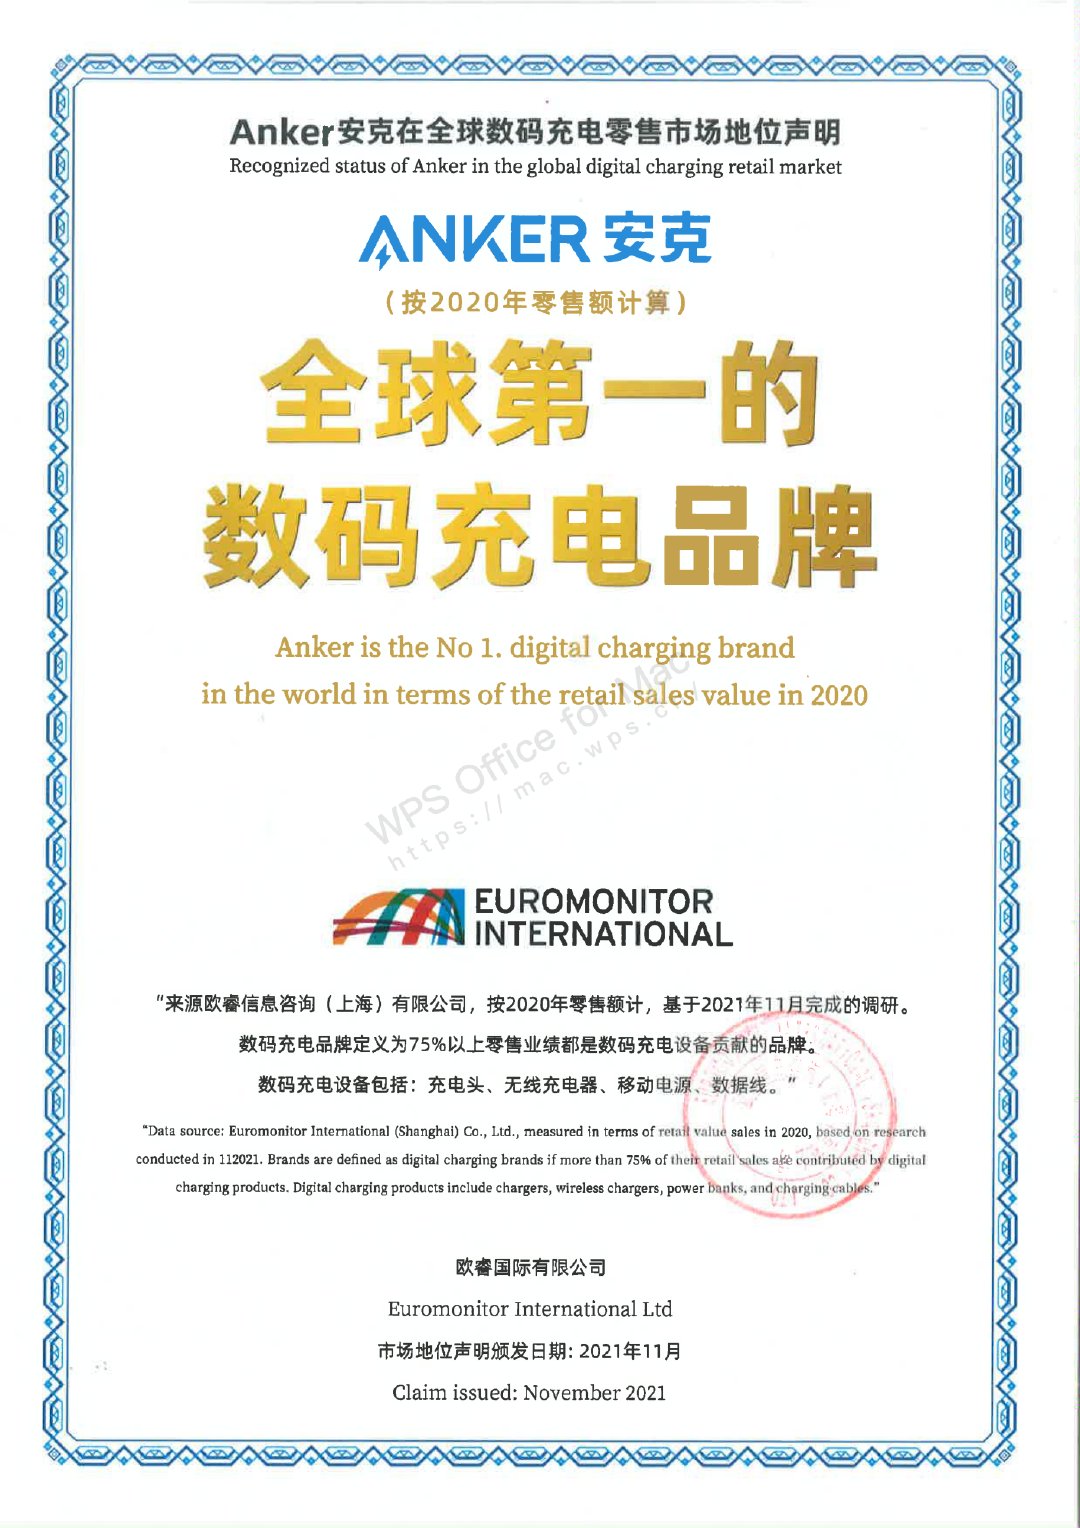 Anker 安克宣布成为全球第一的数码充电品牌